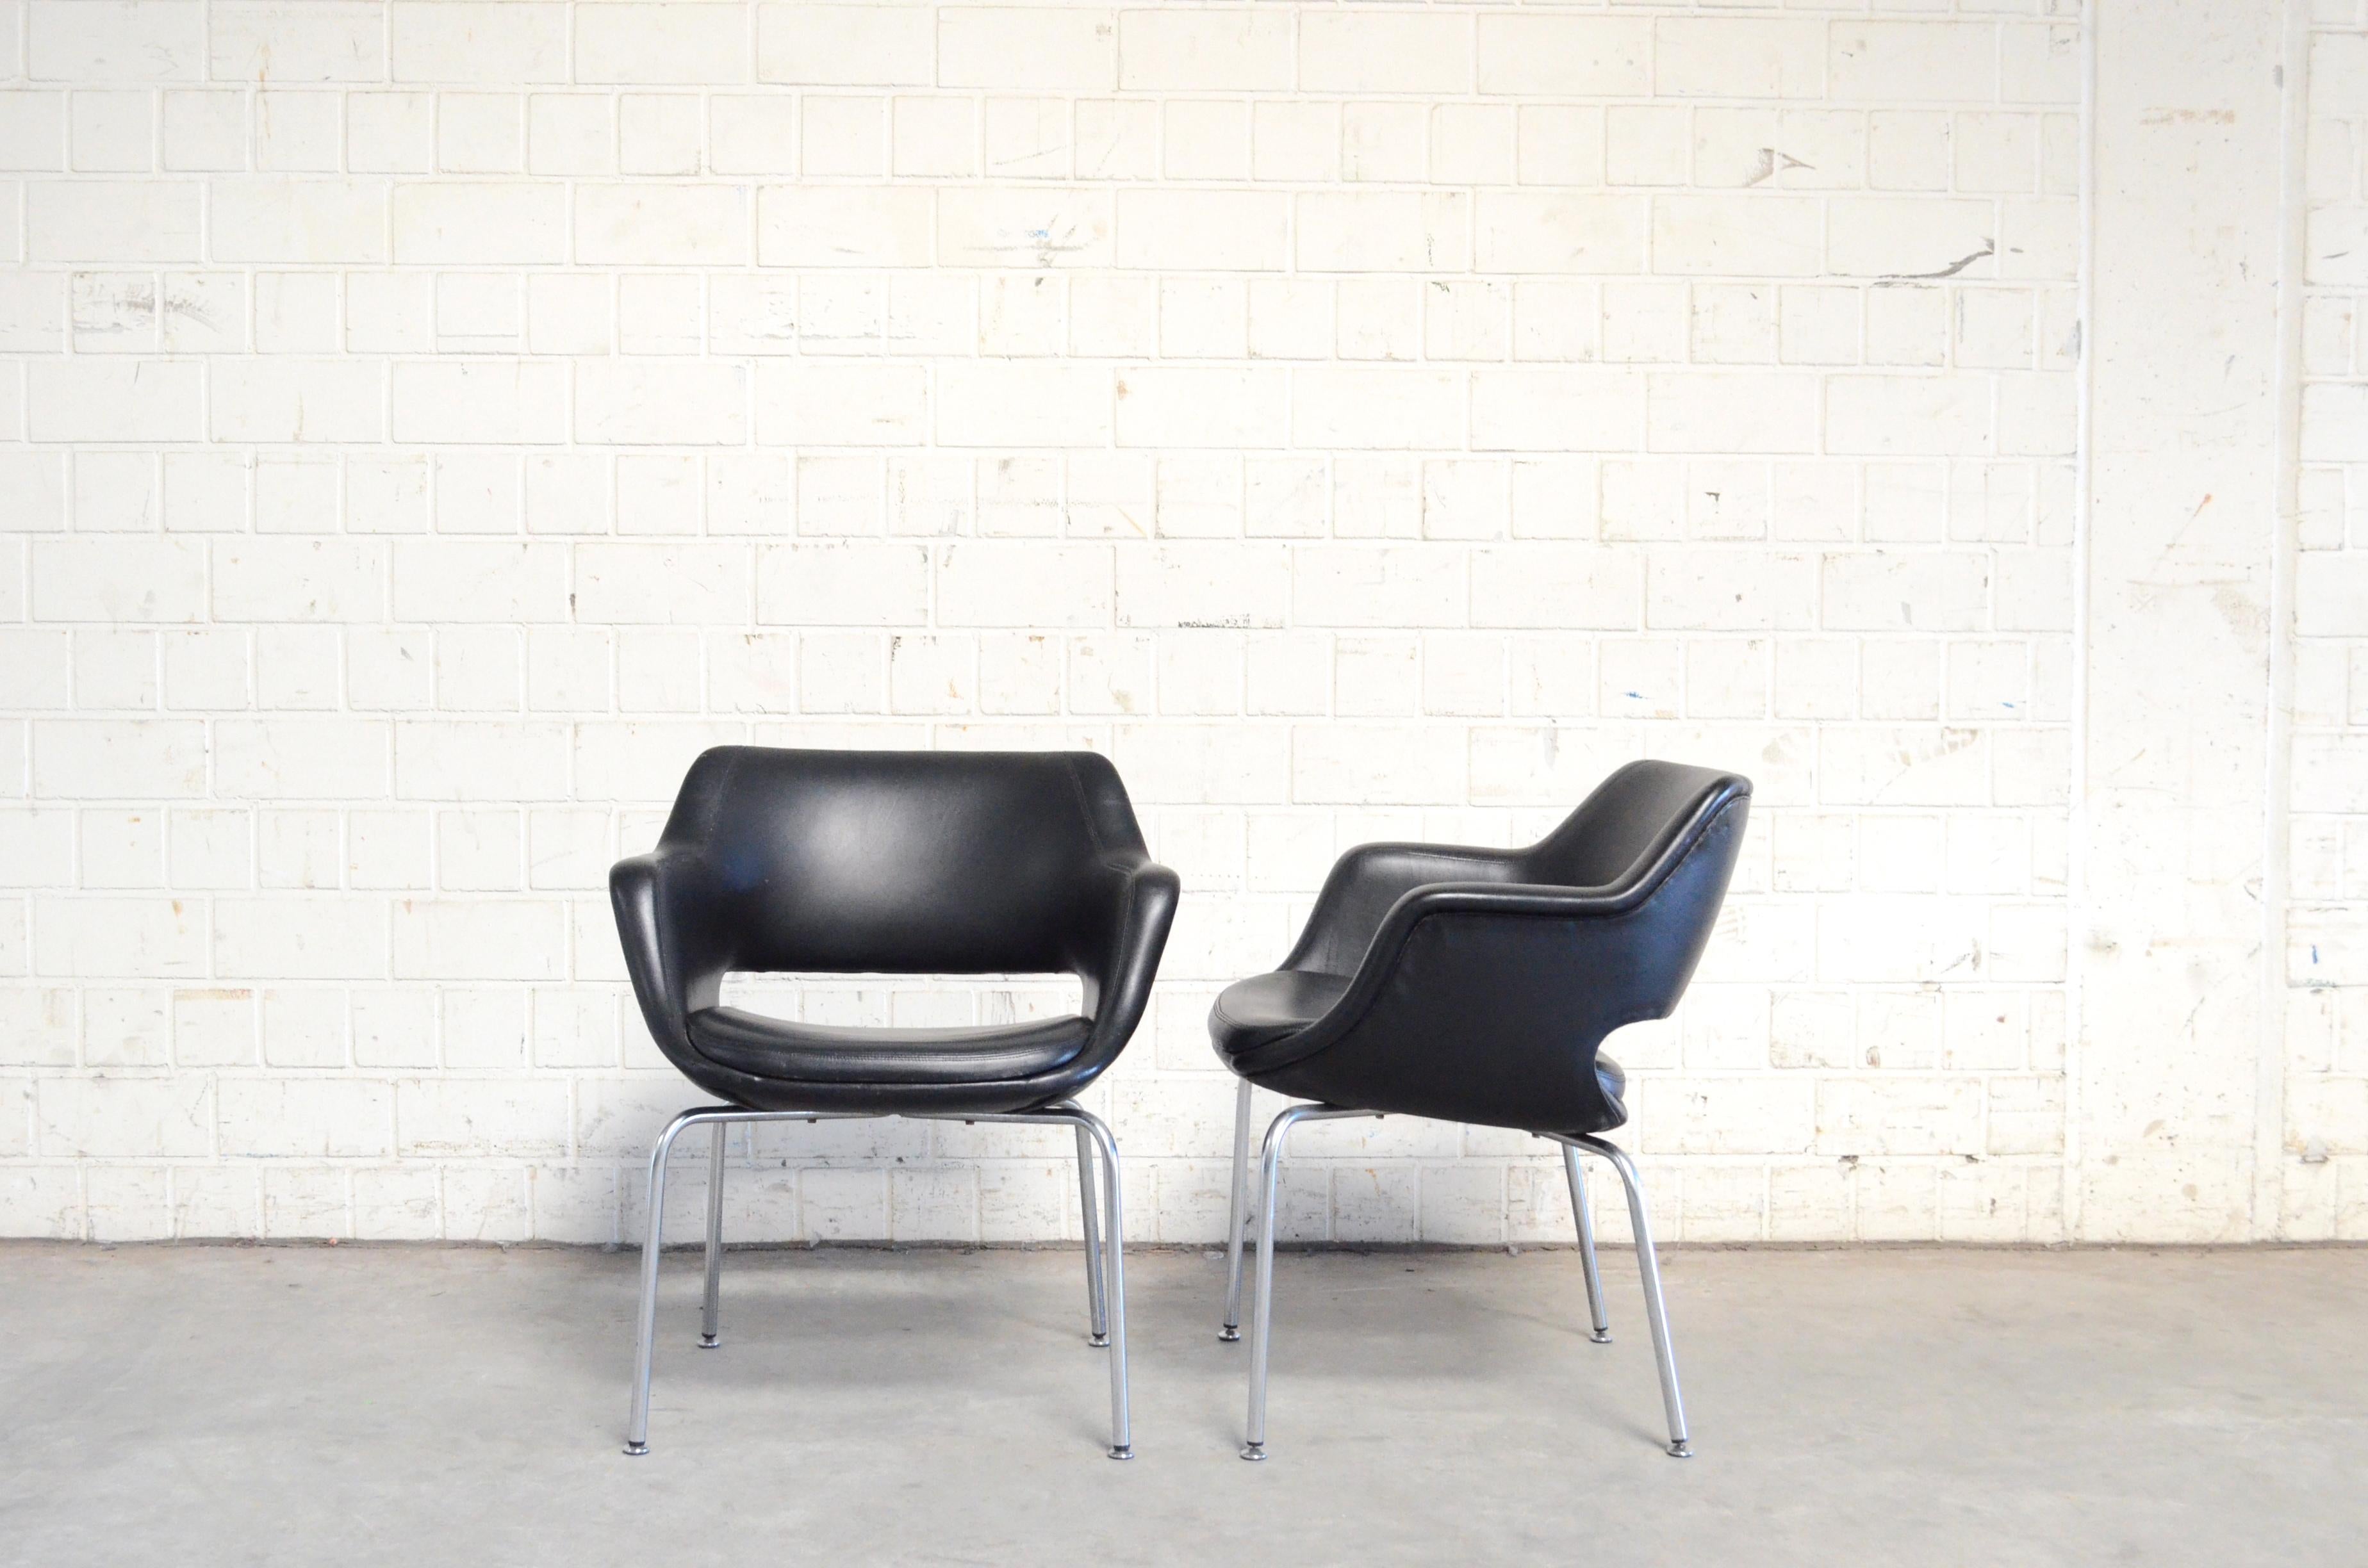 Dieses Modell Kilta wurde 1955 vom finnischen Designer Olli Mannermaa für Martela entworfen.
Der Kilta-Stuhl ist ein finnischer Designklassiker. Das zeitlose Design und der bequeme Sitz von Kilta garantieren seine anhaltende Beliebtheit.
Es ist